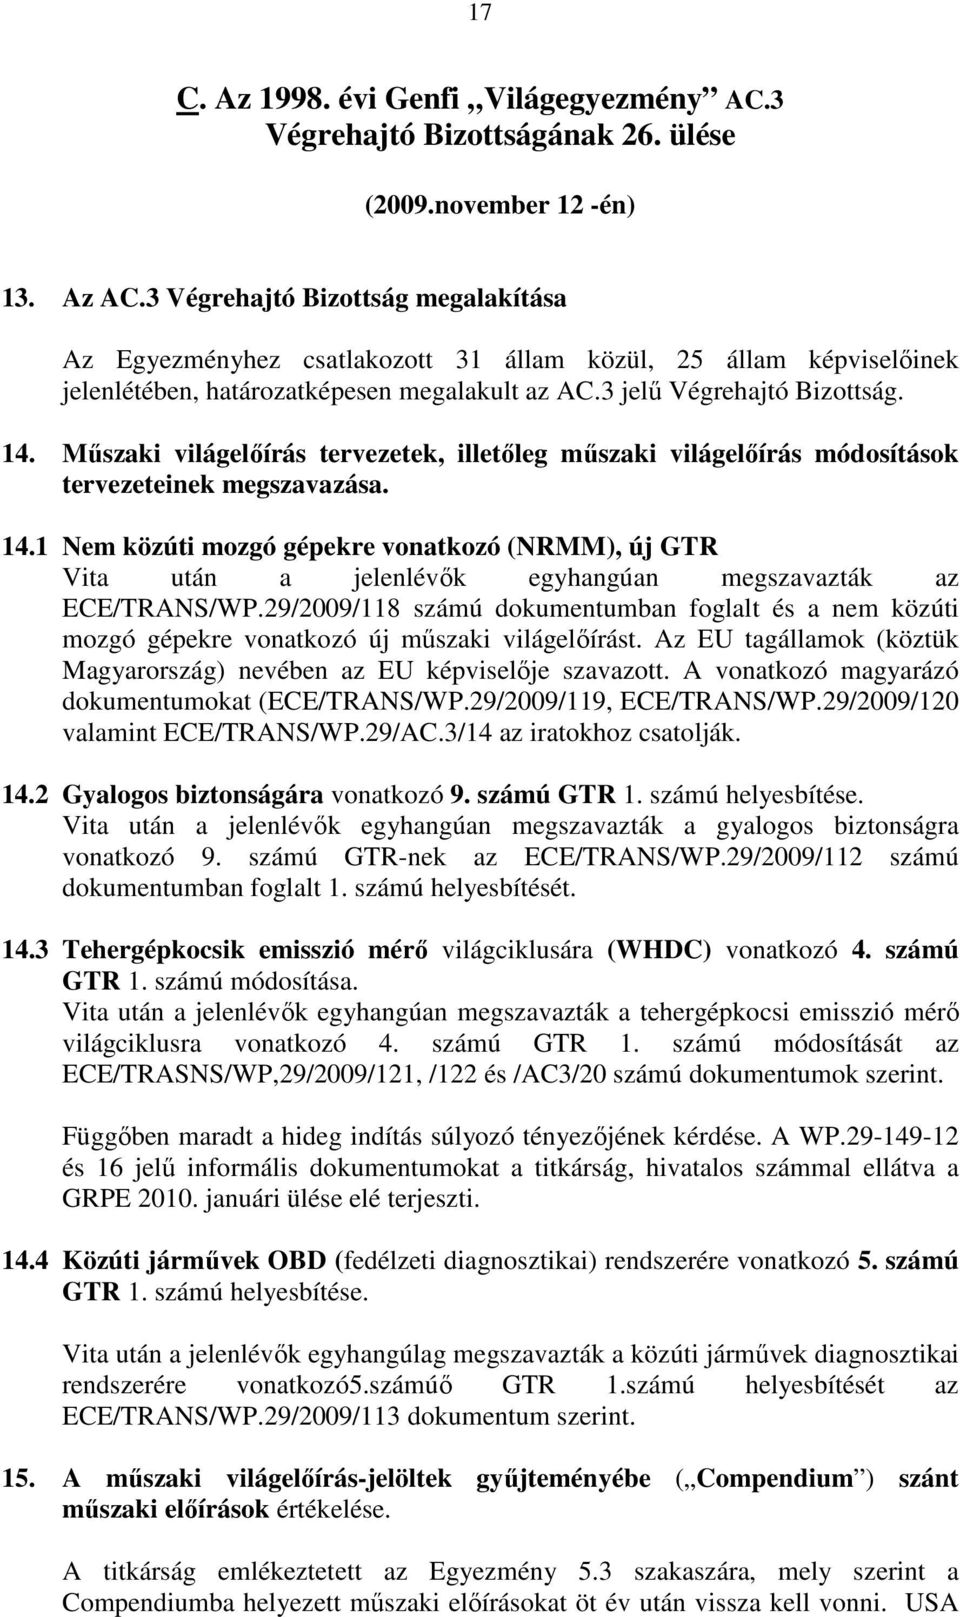 Mőszaki világelıírás tervezetek, illetıleg mőszaki világelıírás módosítások tervezeteinek megszavazása. 14.